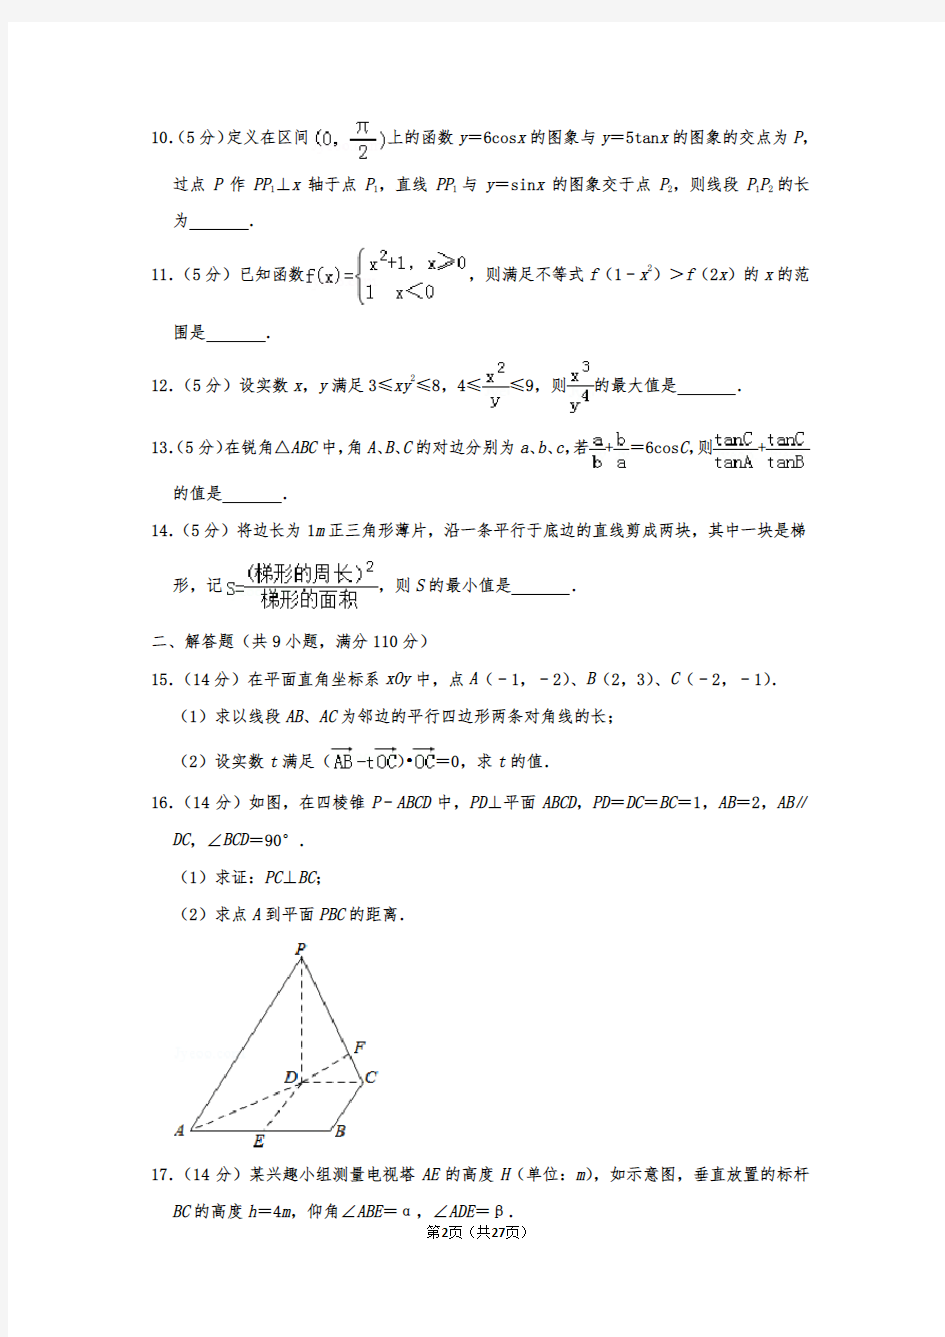 葛军老师参与出题2010年江苏省高考数学试卷